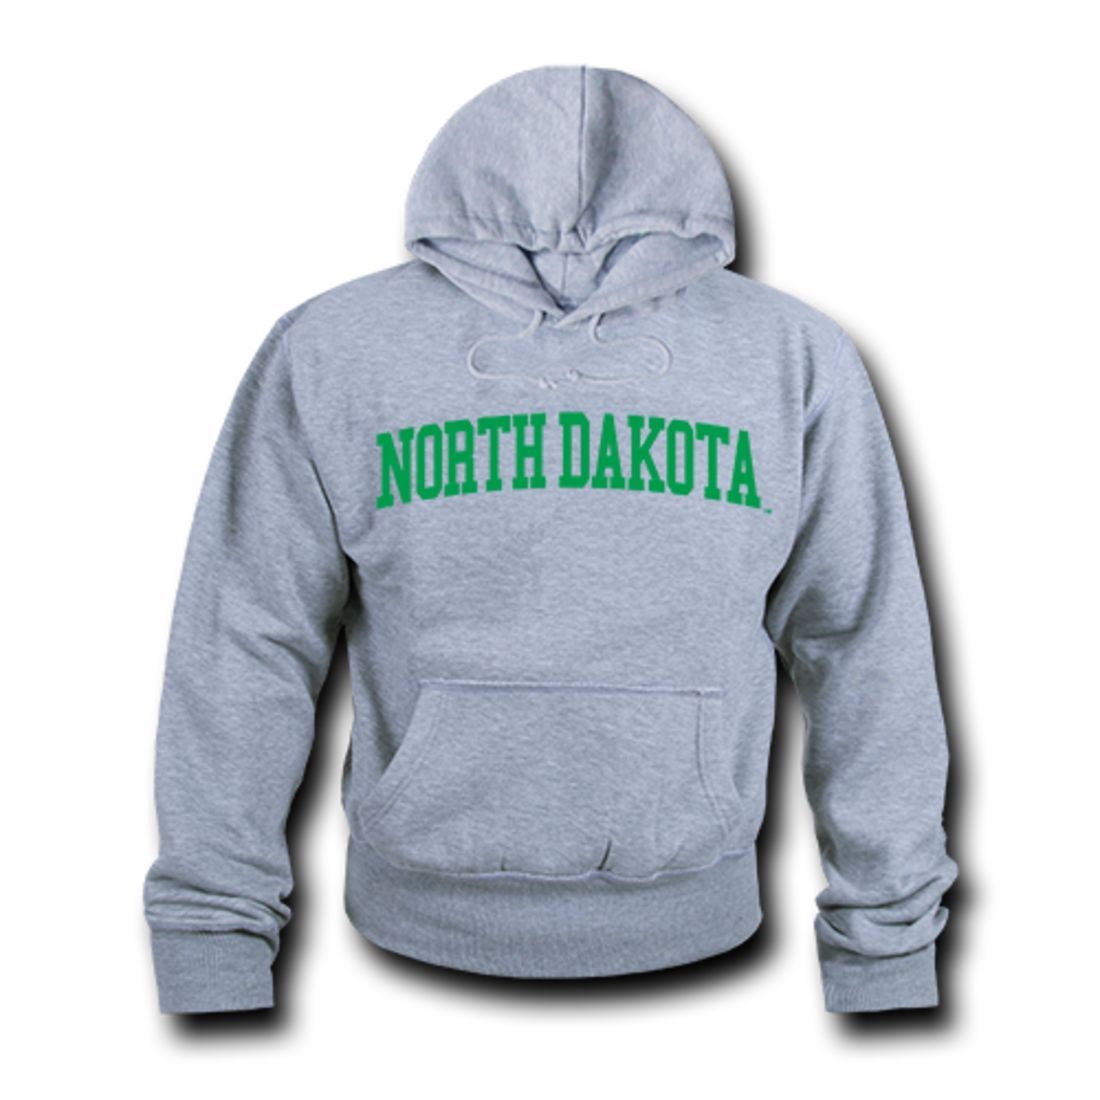 UND University of North Dakota Game Day Hoodie Sweatshirt Heather Grey-Campus-Wardrobe